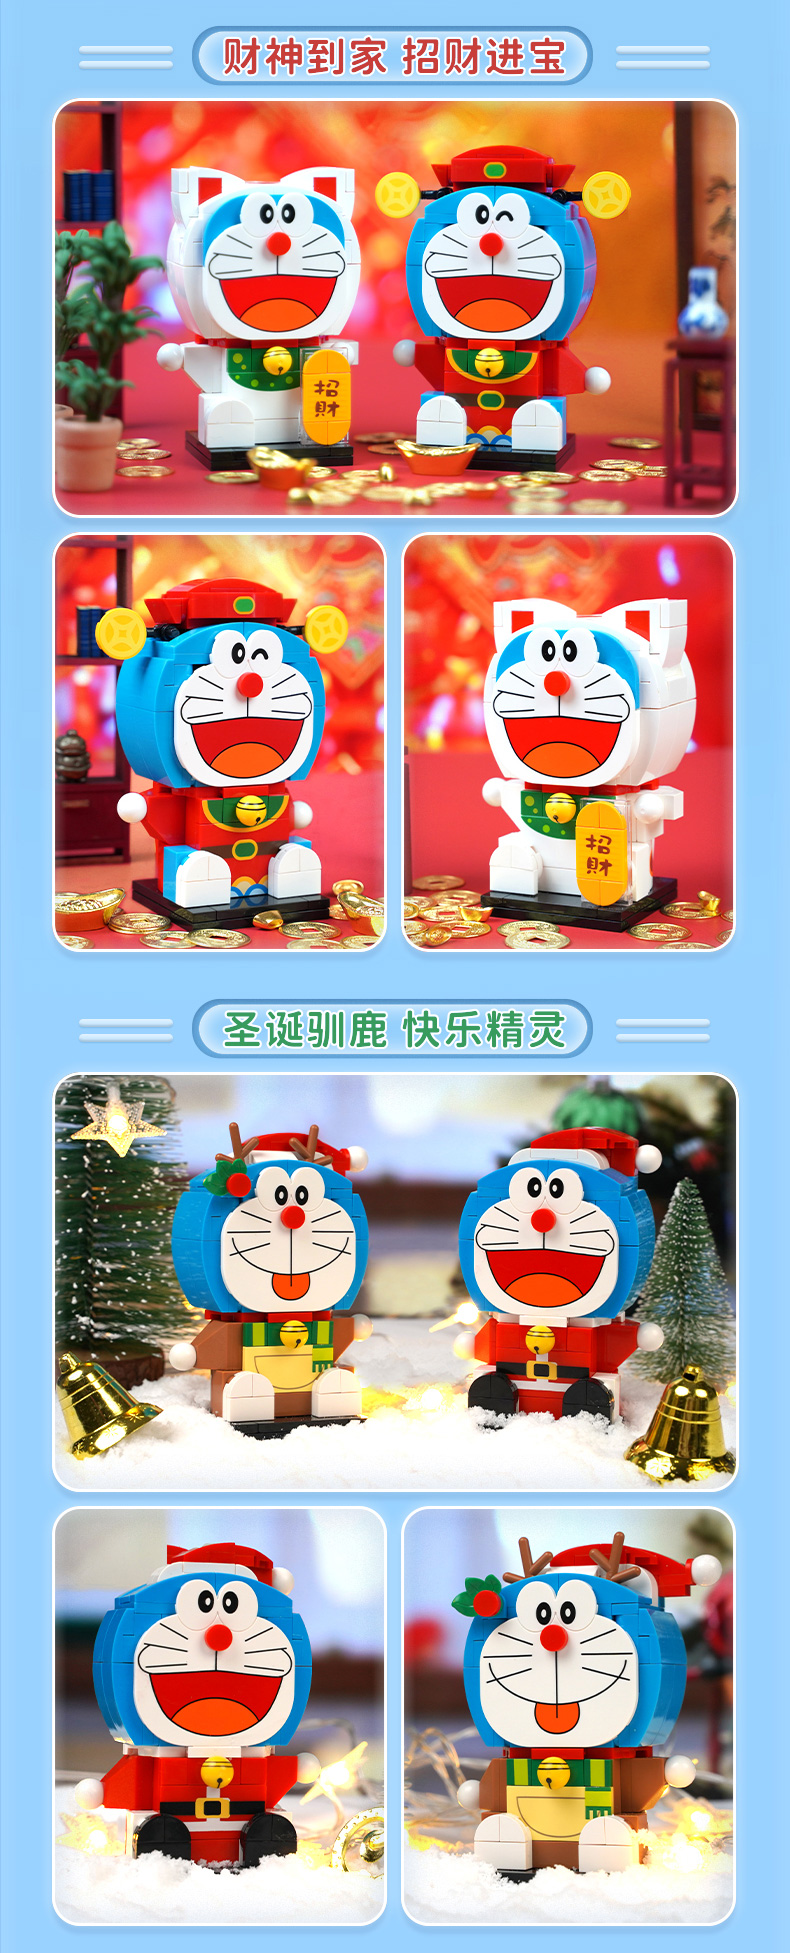 Keeppley K20403 Doraemon, Dios de la riqueza, juego de juguetes con bloques de construcción